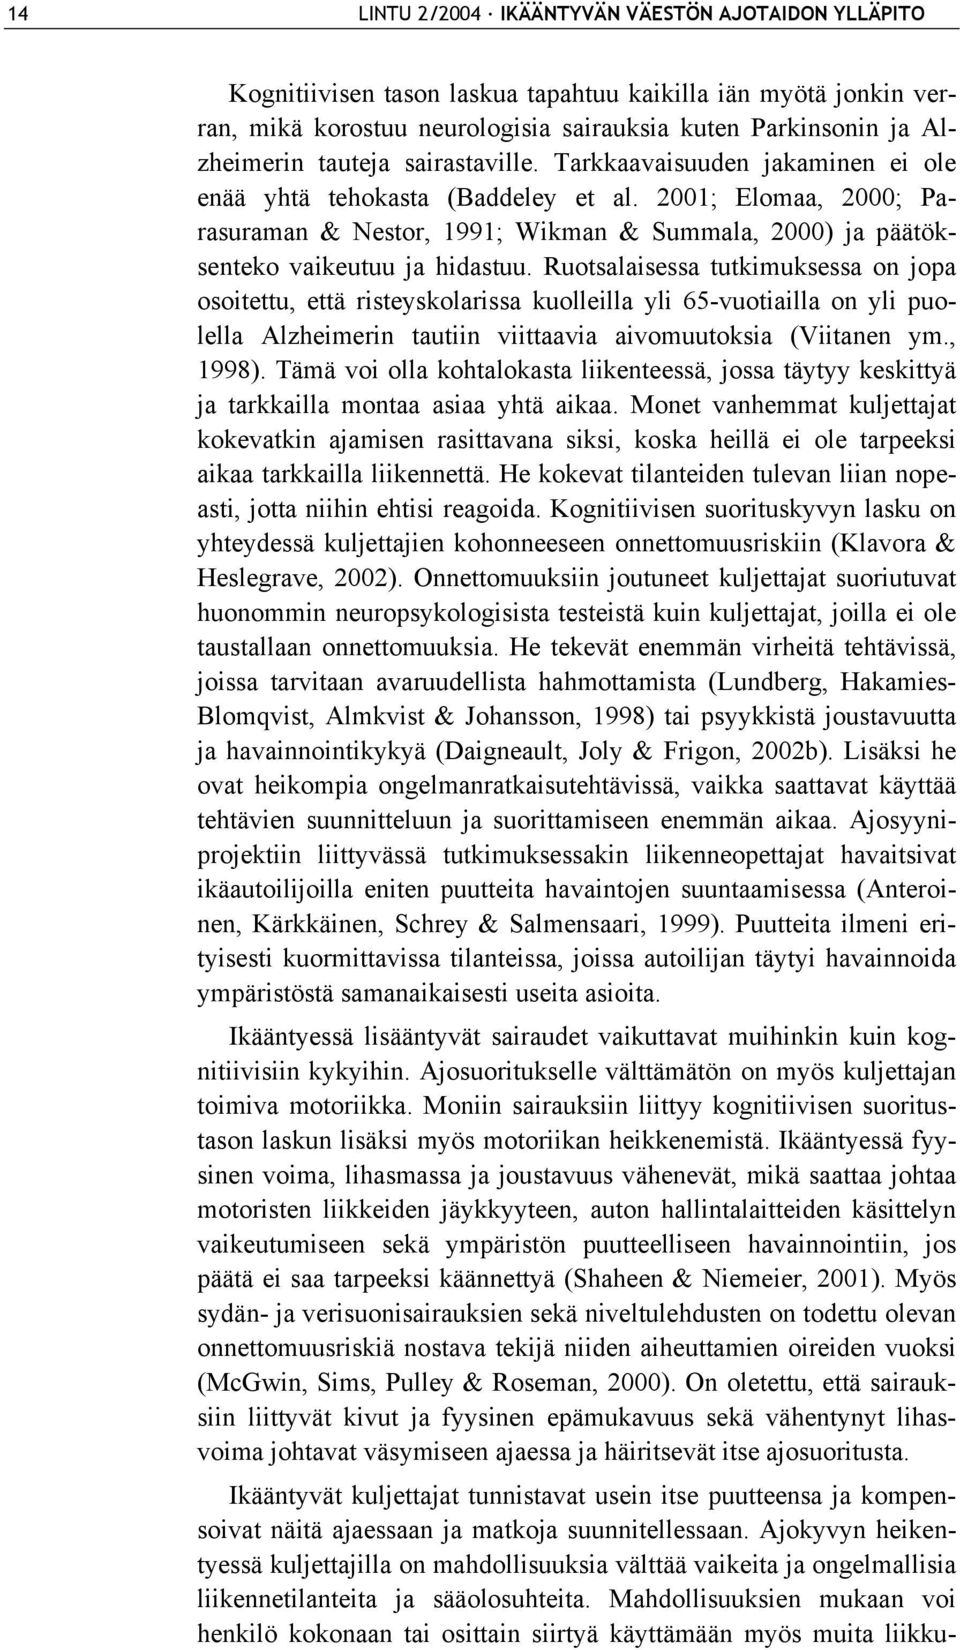 2001; Elomaa, 2000; Parasuraman & Nestor, 1991; Wikman & Summala, 2000) ja päätöksenteko vaikeutuu ja hidastuu.